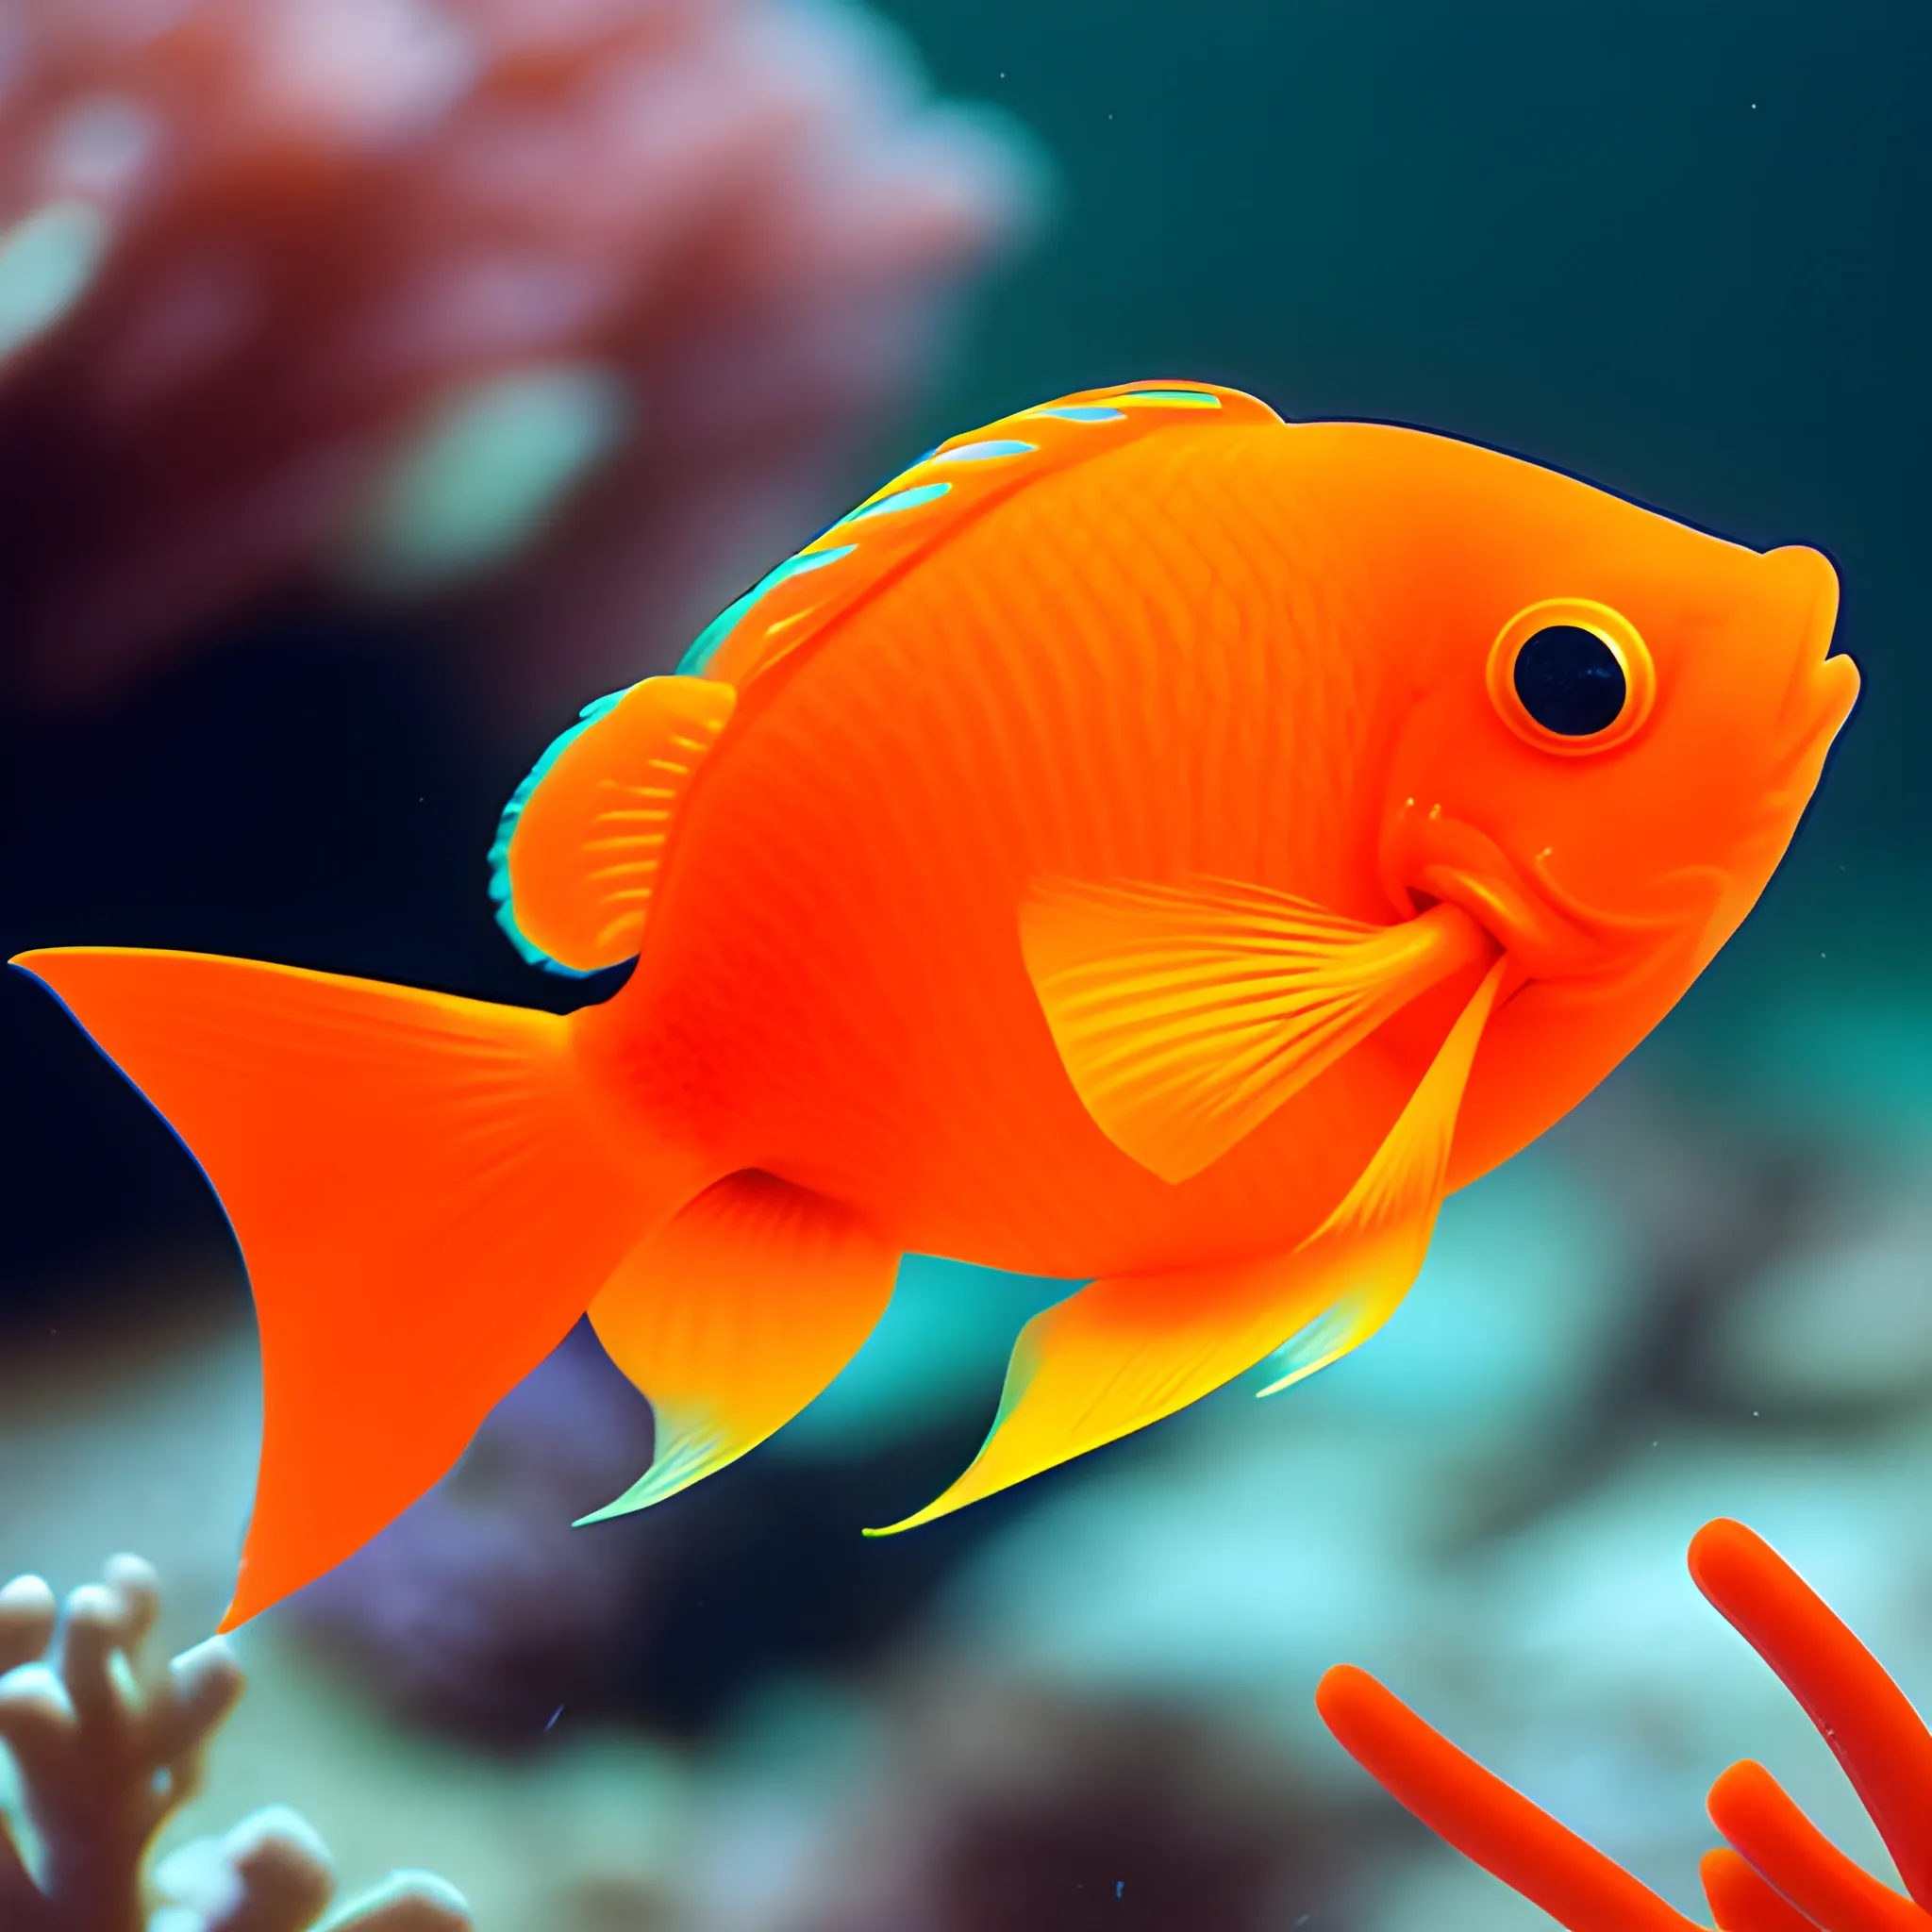 Cute orange fish